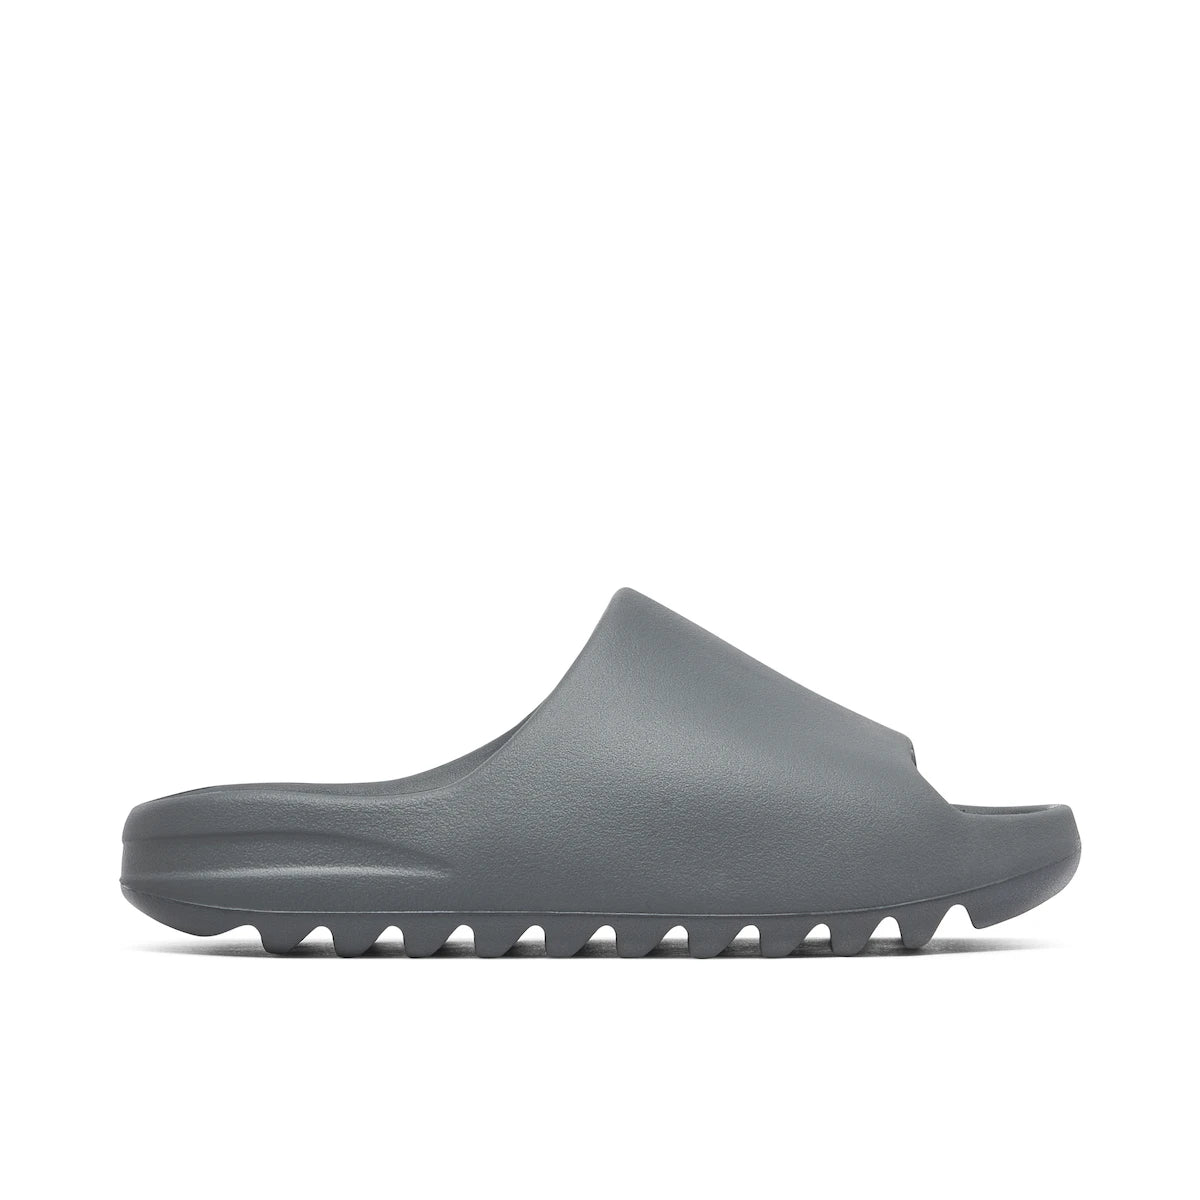 Adidas Yeezy Slide Slate Grey ID2350 -Adidas Yeezy Slide Slate Grey ID2350